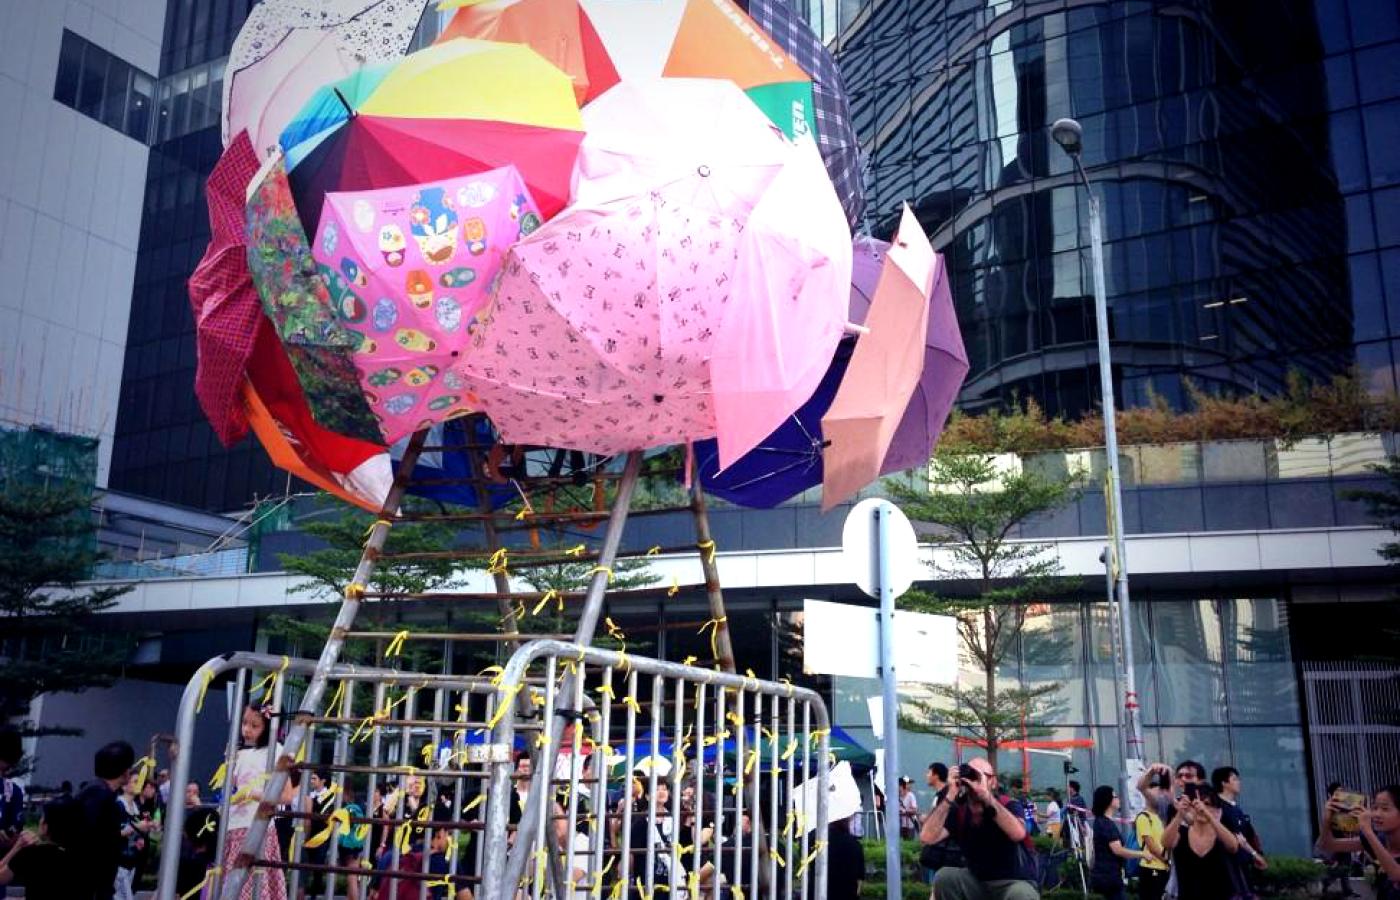 Uliczne dzieło sztuki wykonane z parasoli – symboli protestów nazywanych „Parasolową rewolucją”.